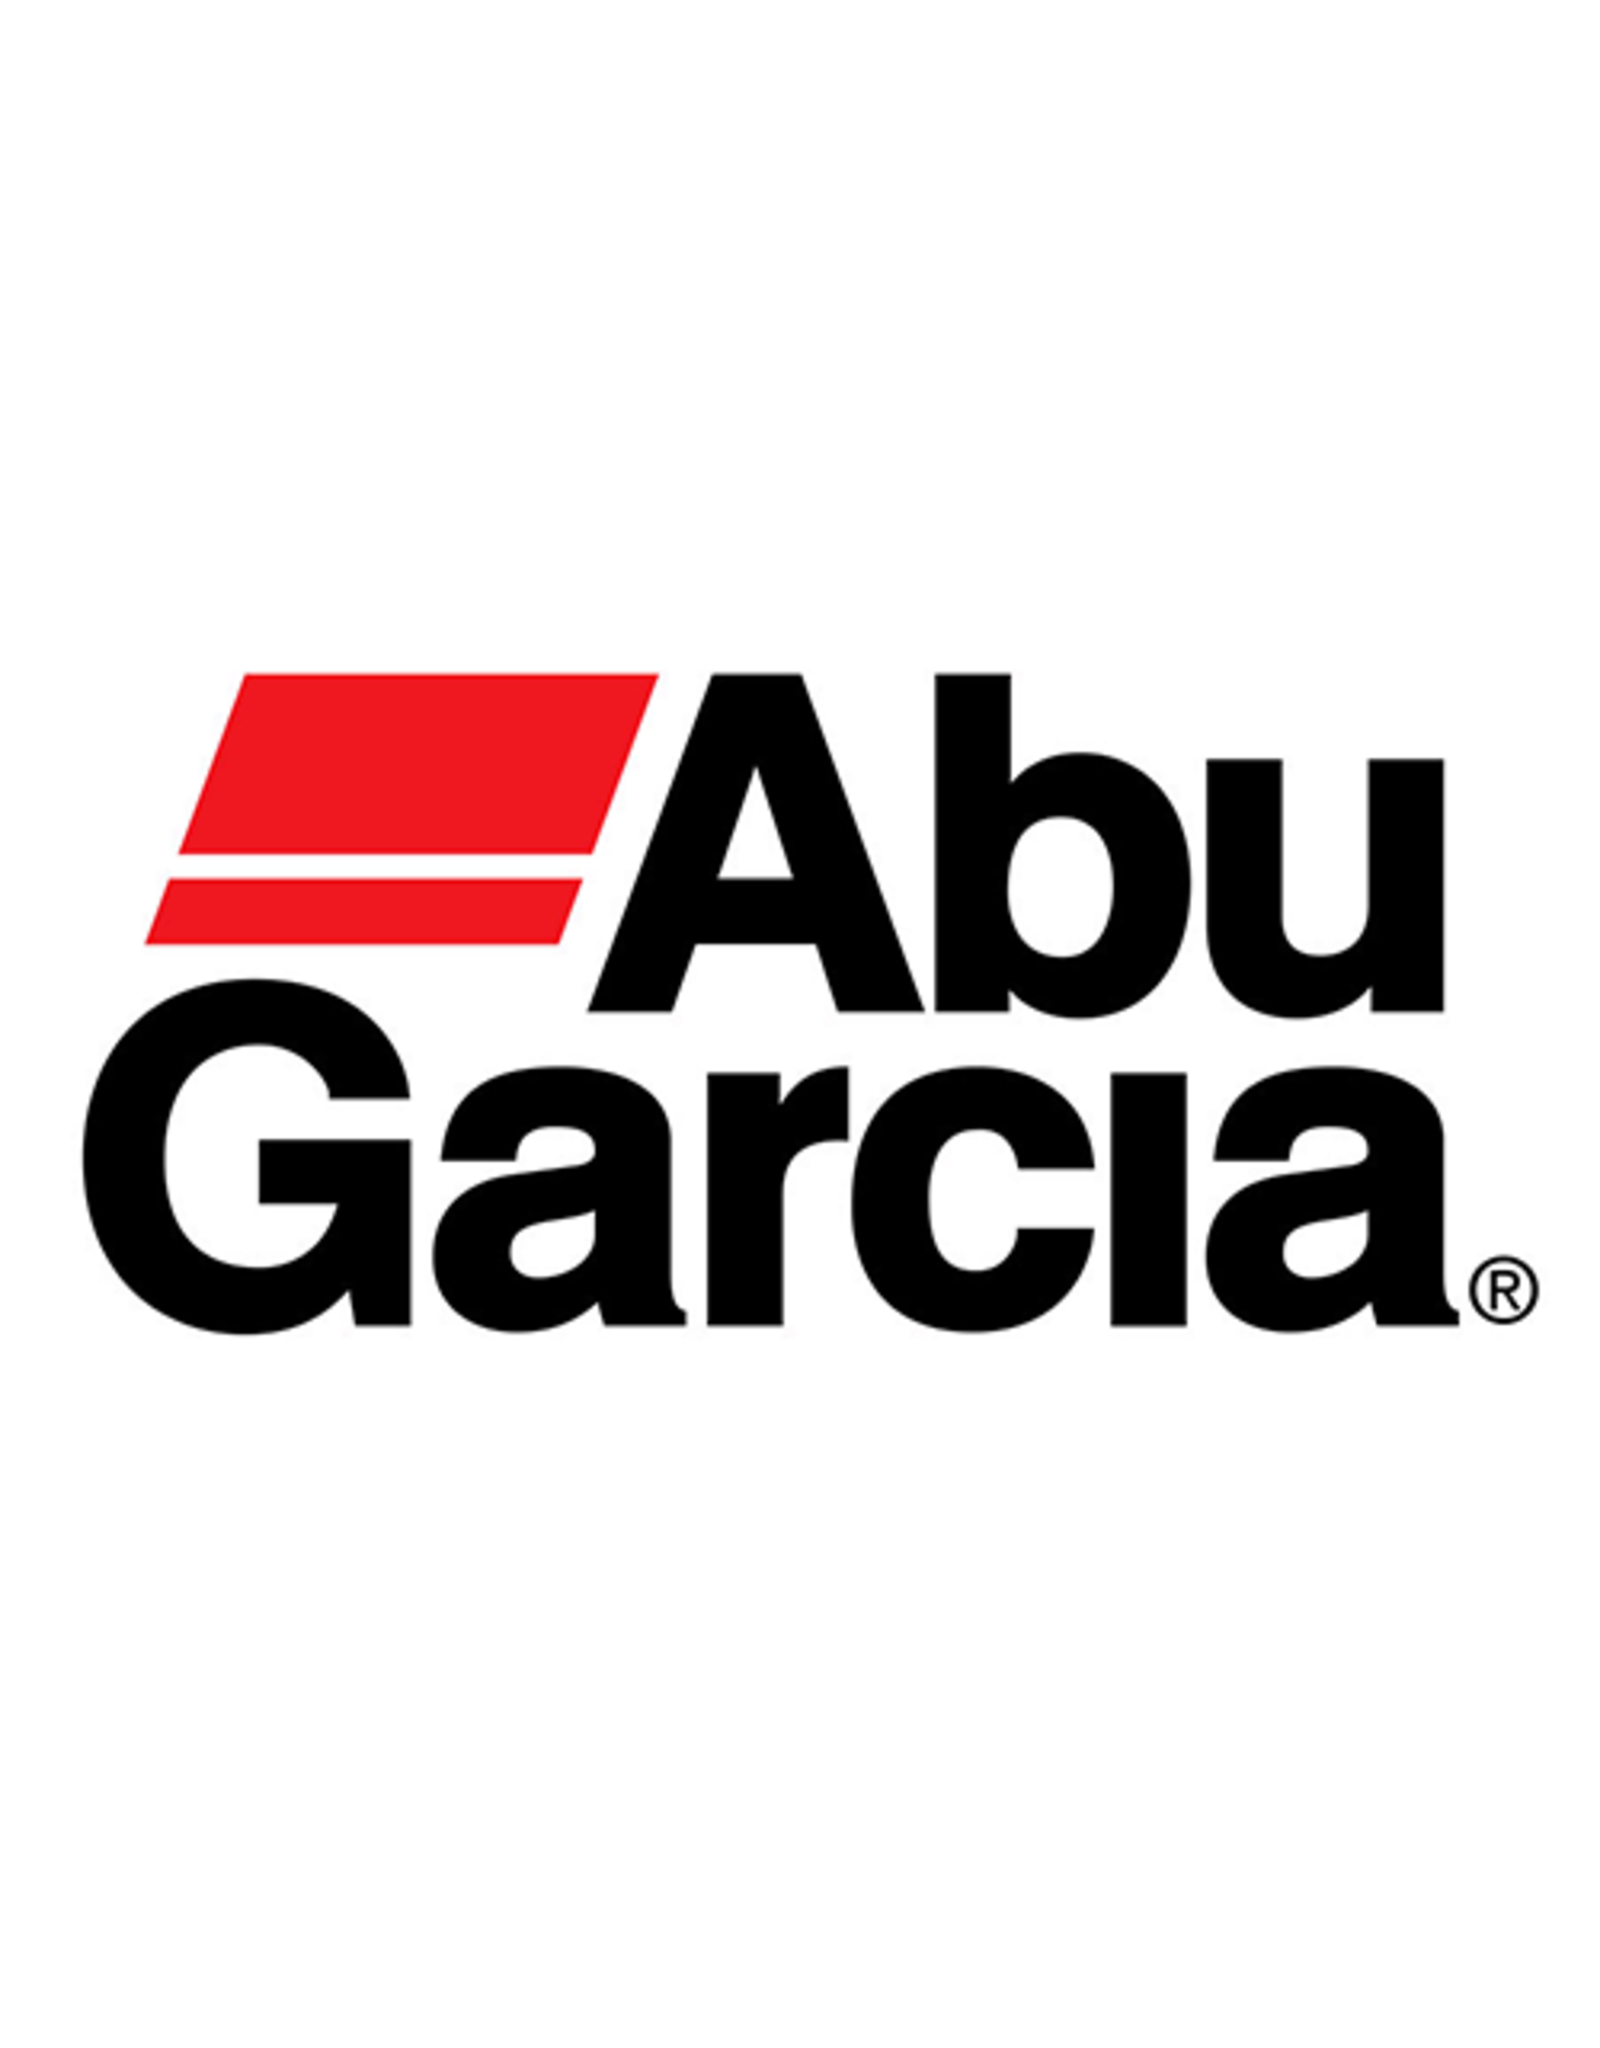 Abu Garcia 977004  SCREW/NLA